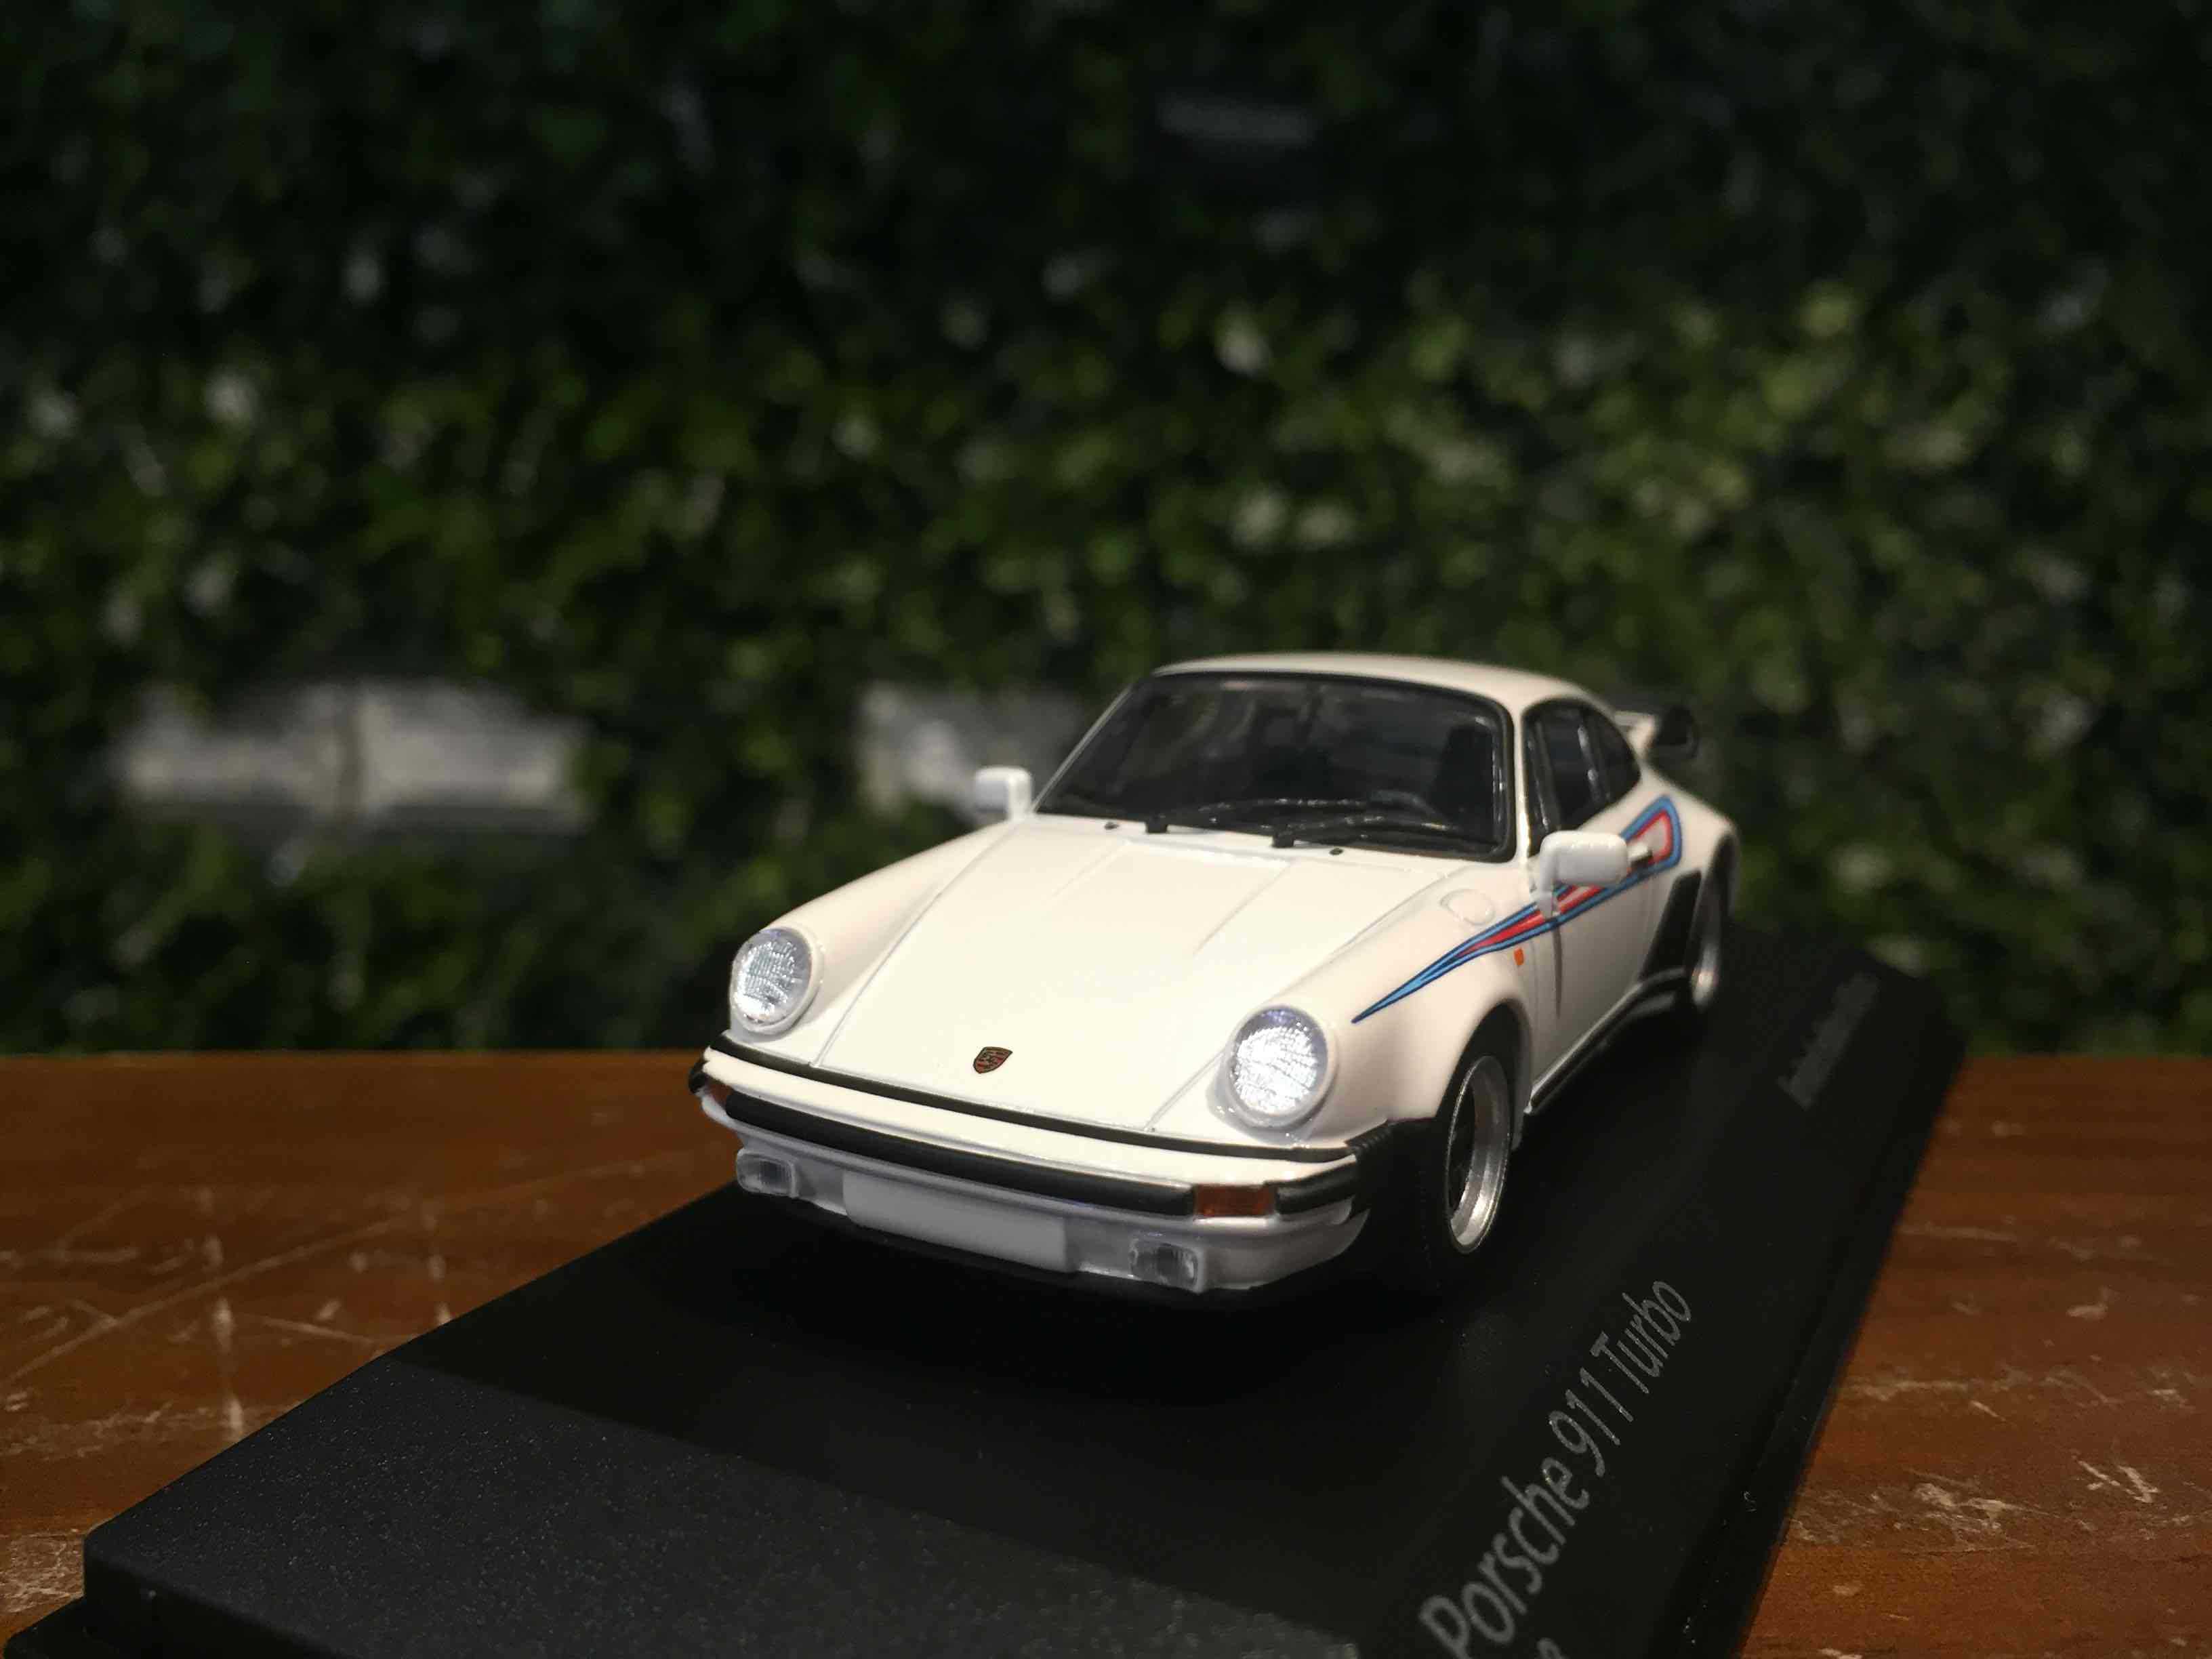 1/43 Minichamps Porsche 911 (930) Turbo 1976 943069005【MGM】